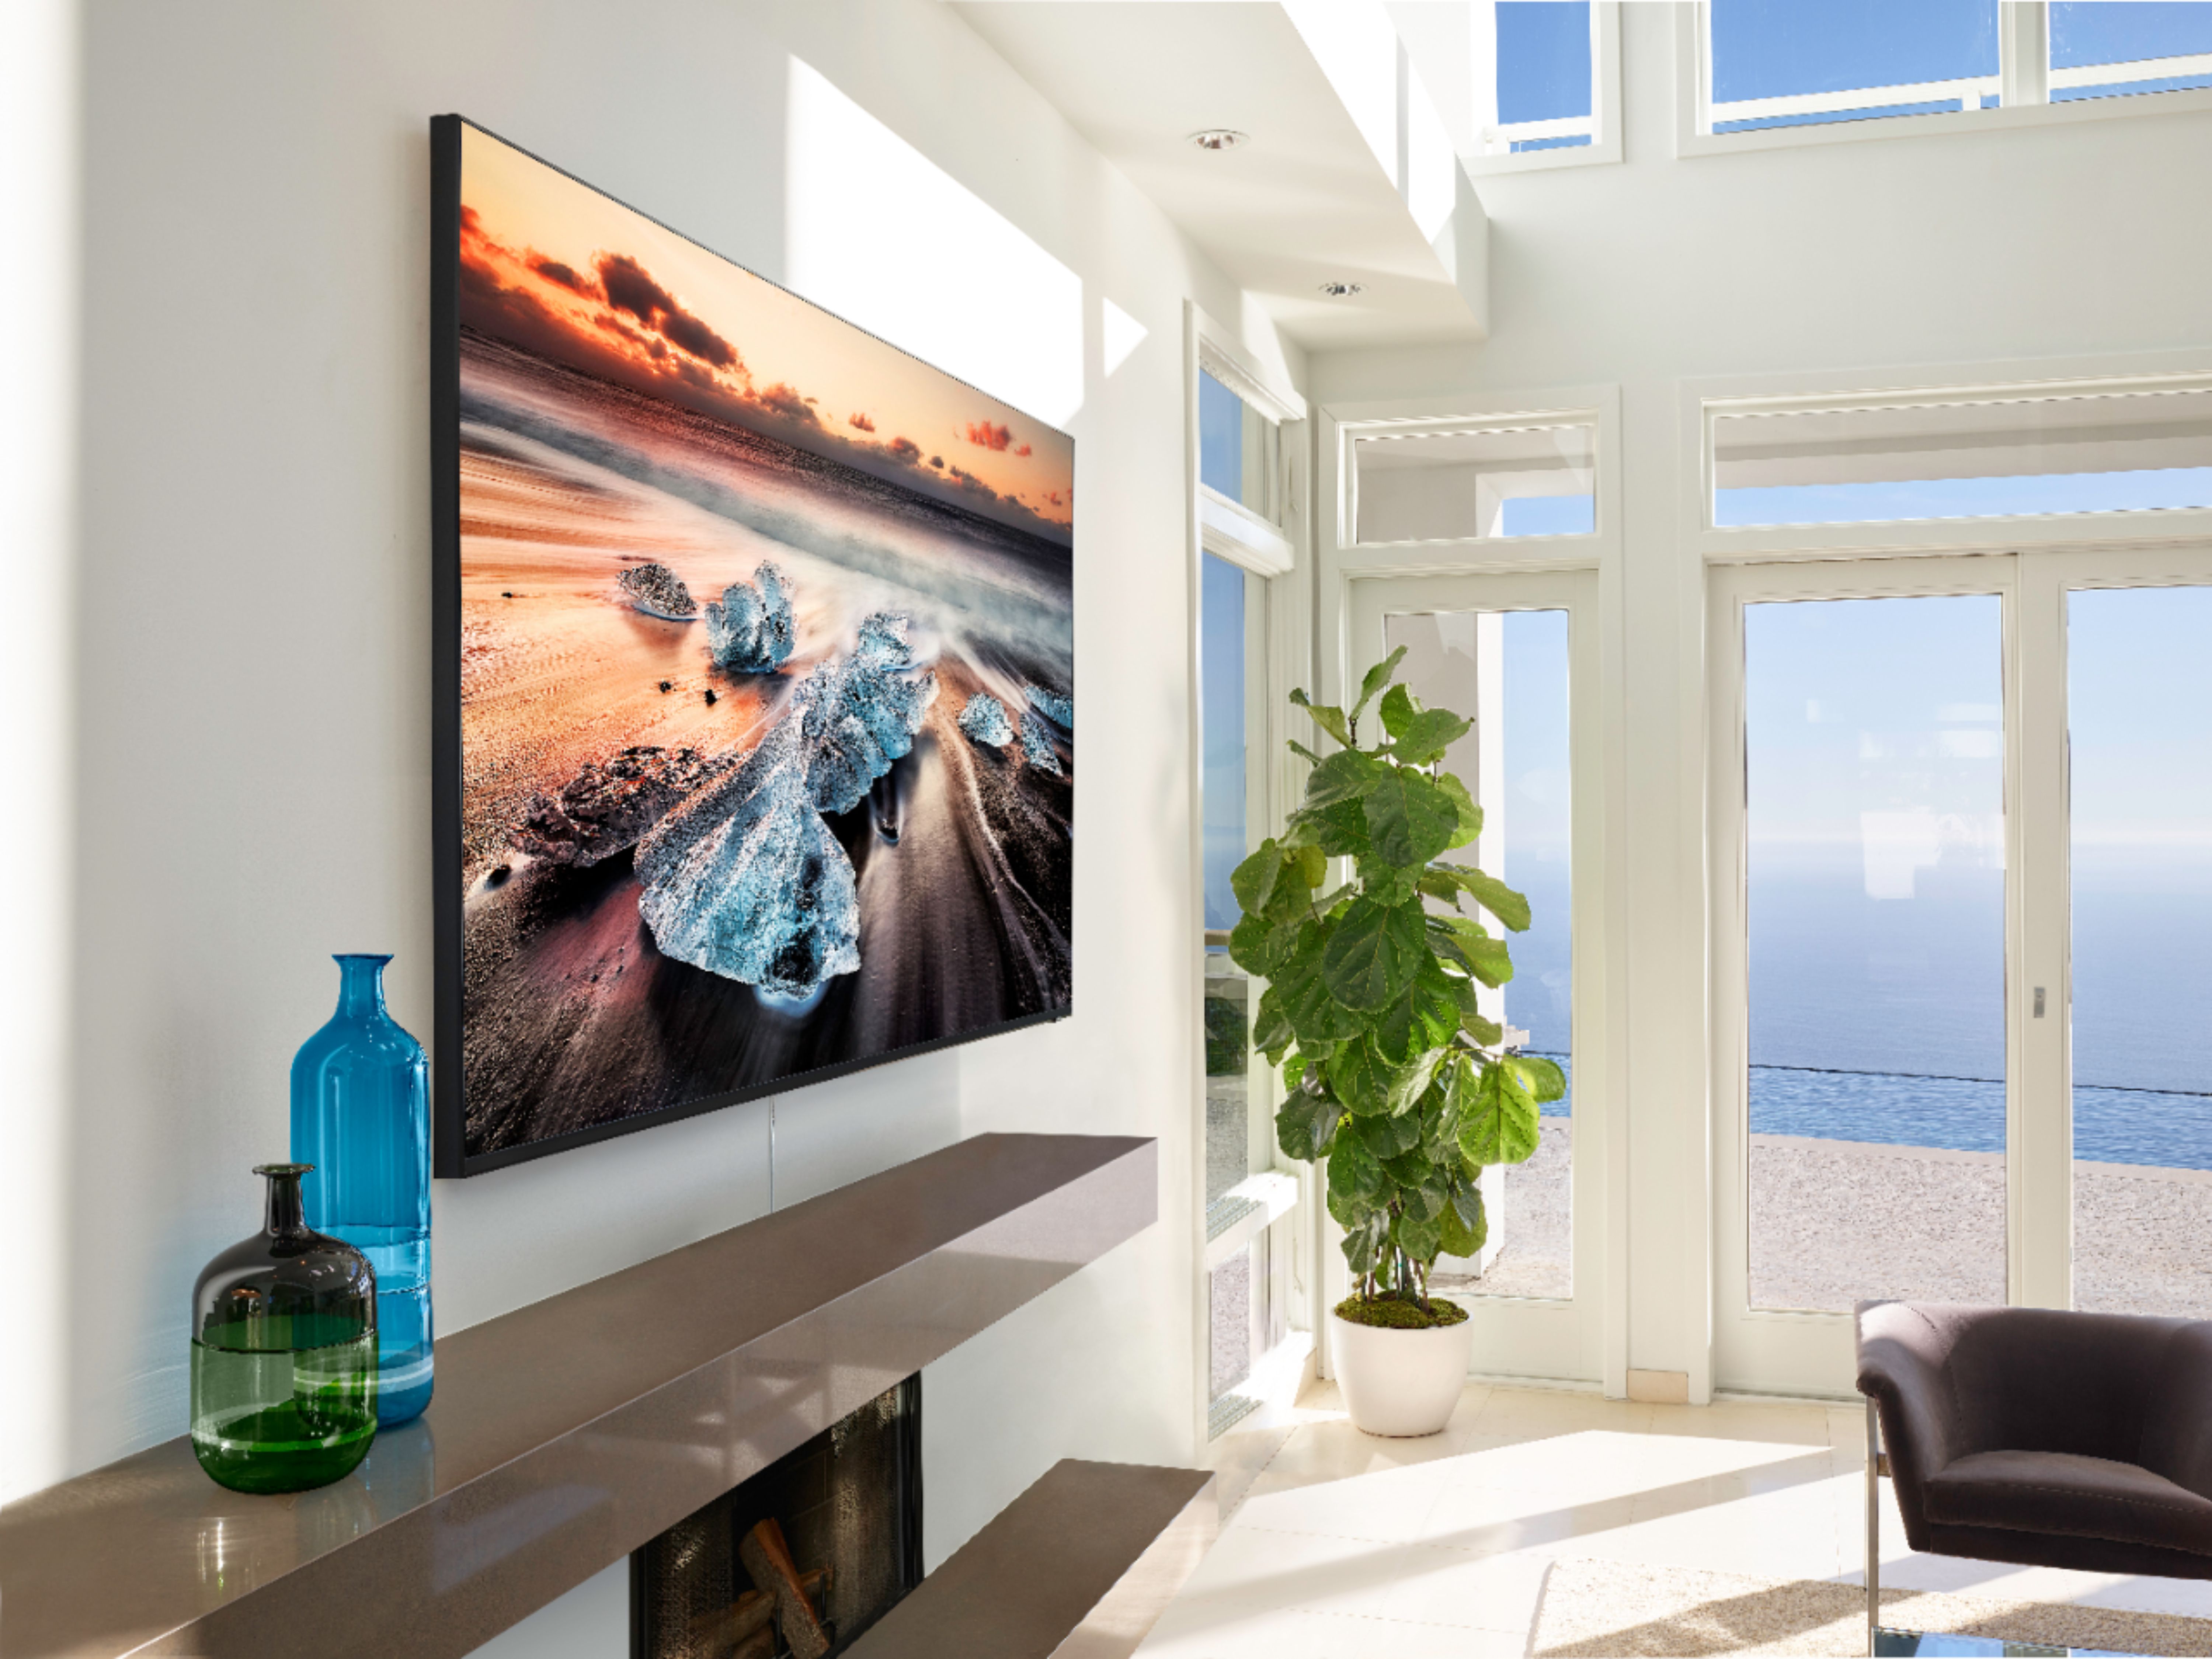 Revisión del Samsung Q900 8K QLED TV de 85 pulgadas - Digital